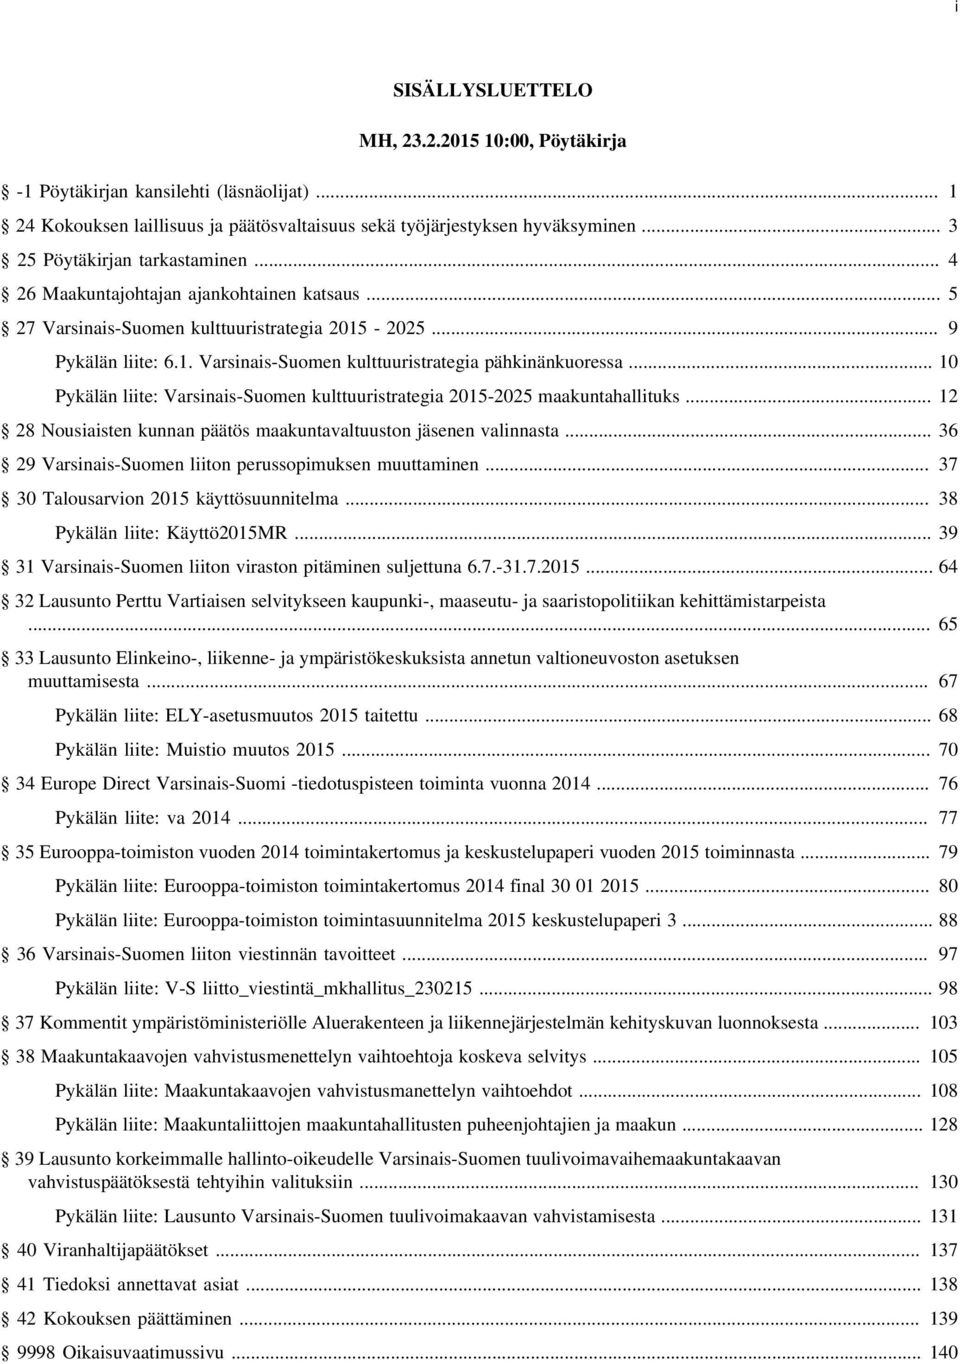 .. 10 Pykälän liite: Varsinais-Suomen kulttuuristrategia 2015-2025 maakuntahallituks... 12 28 Nousiaisten kunnan päätös maakuntavaltuuston jäsenen valinnasta.